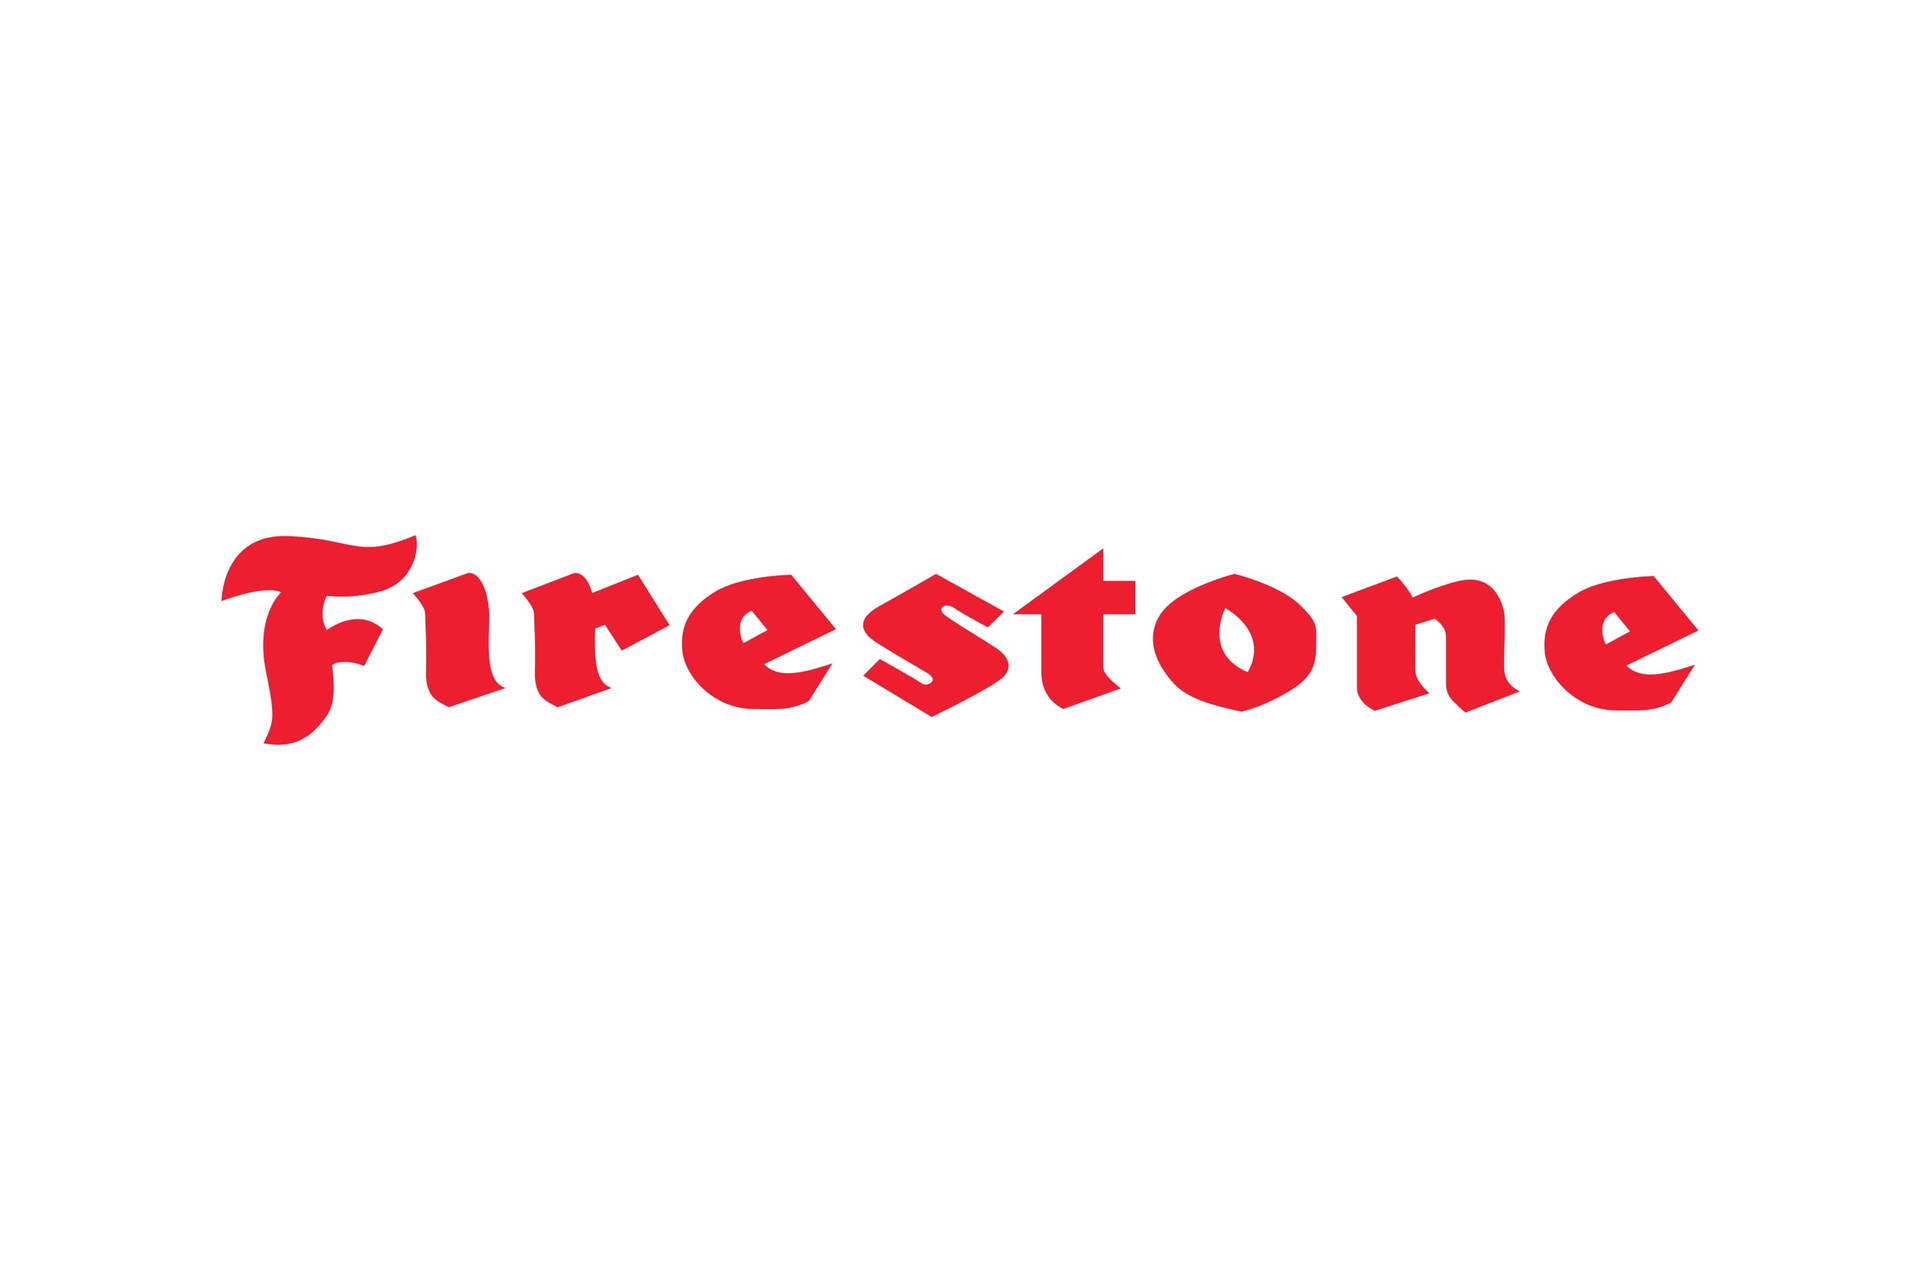 Firestone Red Logo On White Wallpaper